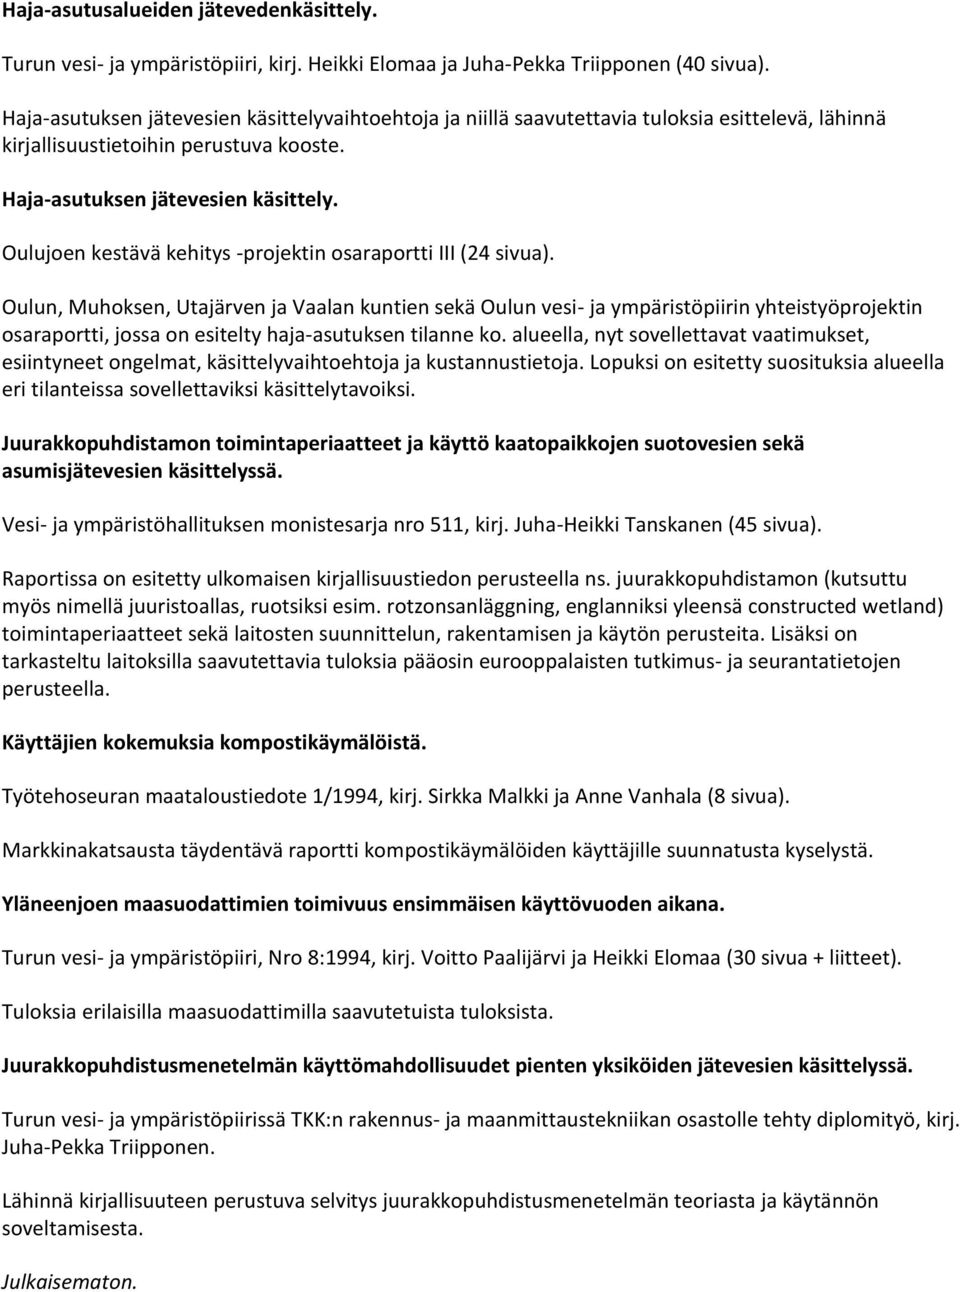 Oulujoen kestävä kehitys -projektin osaraportti III (24 sivua).